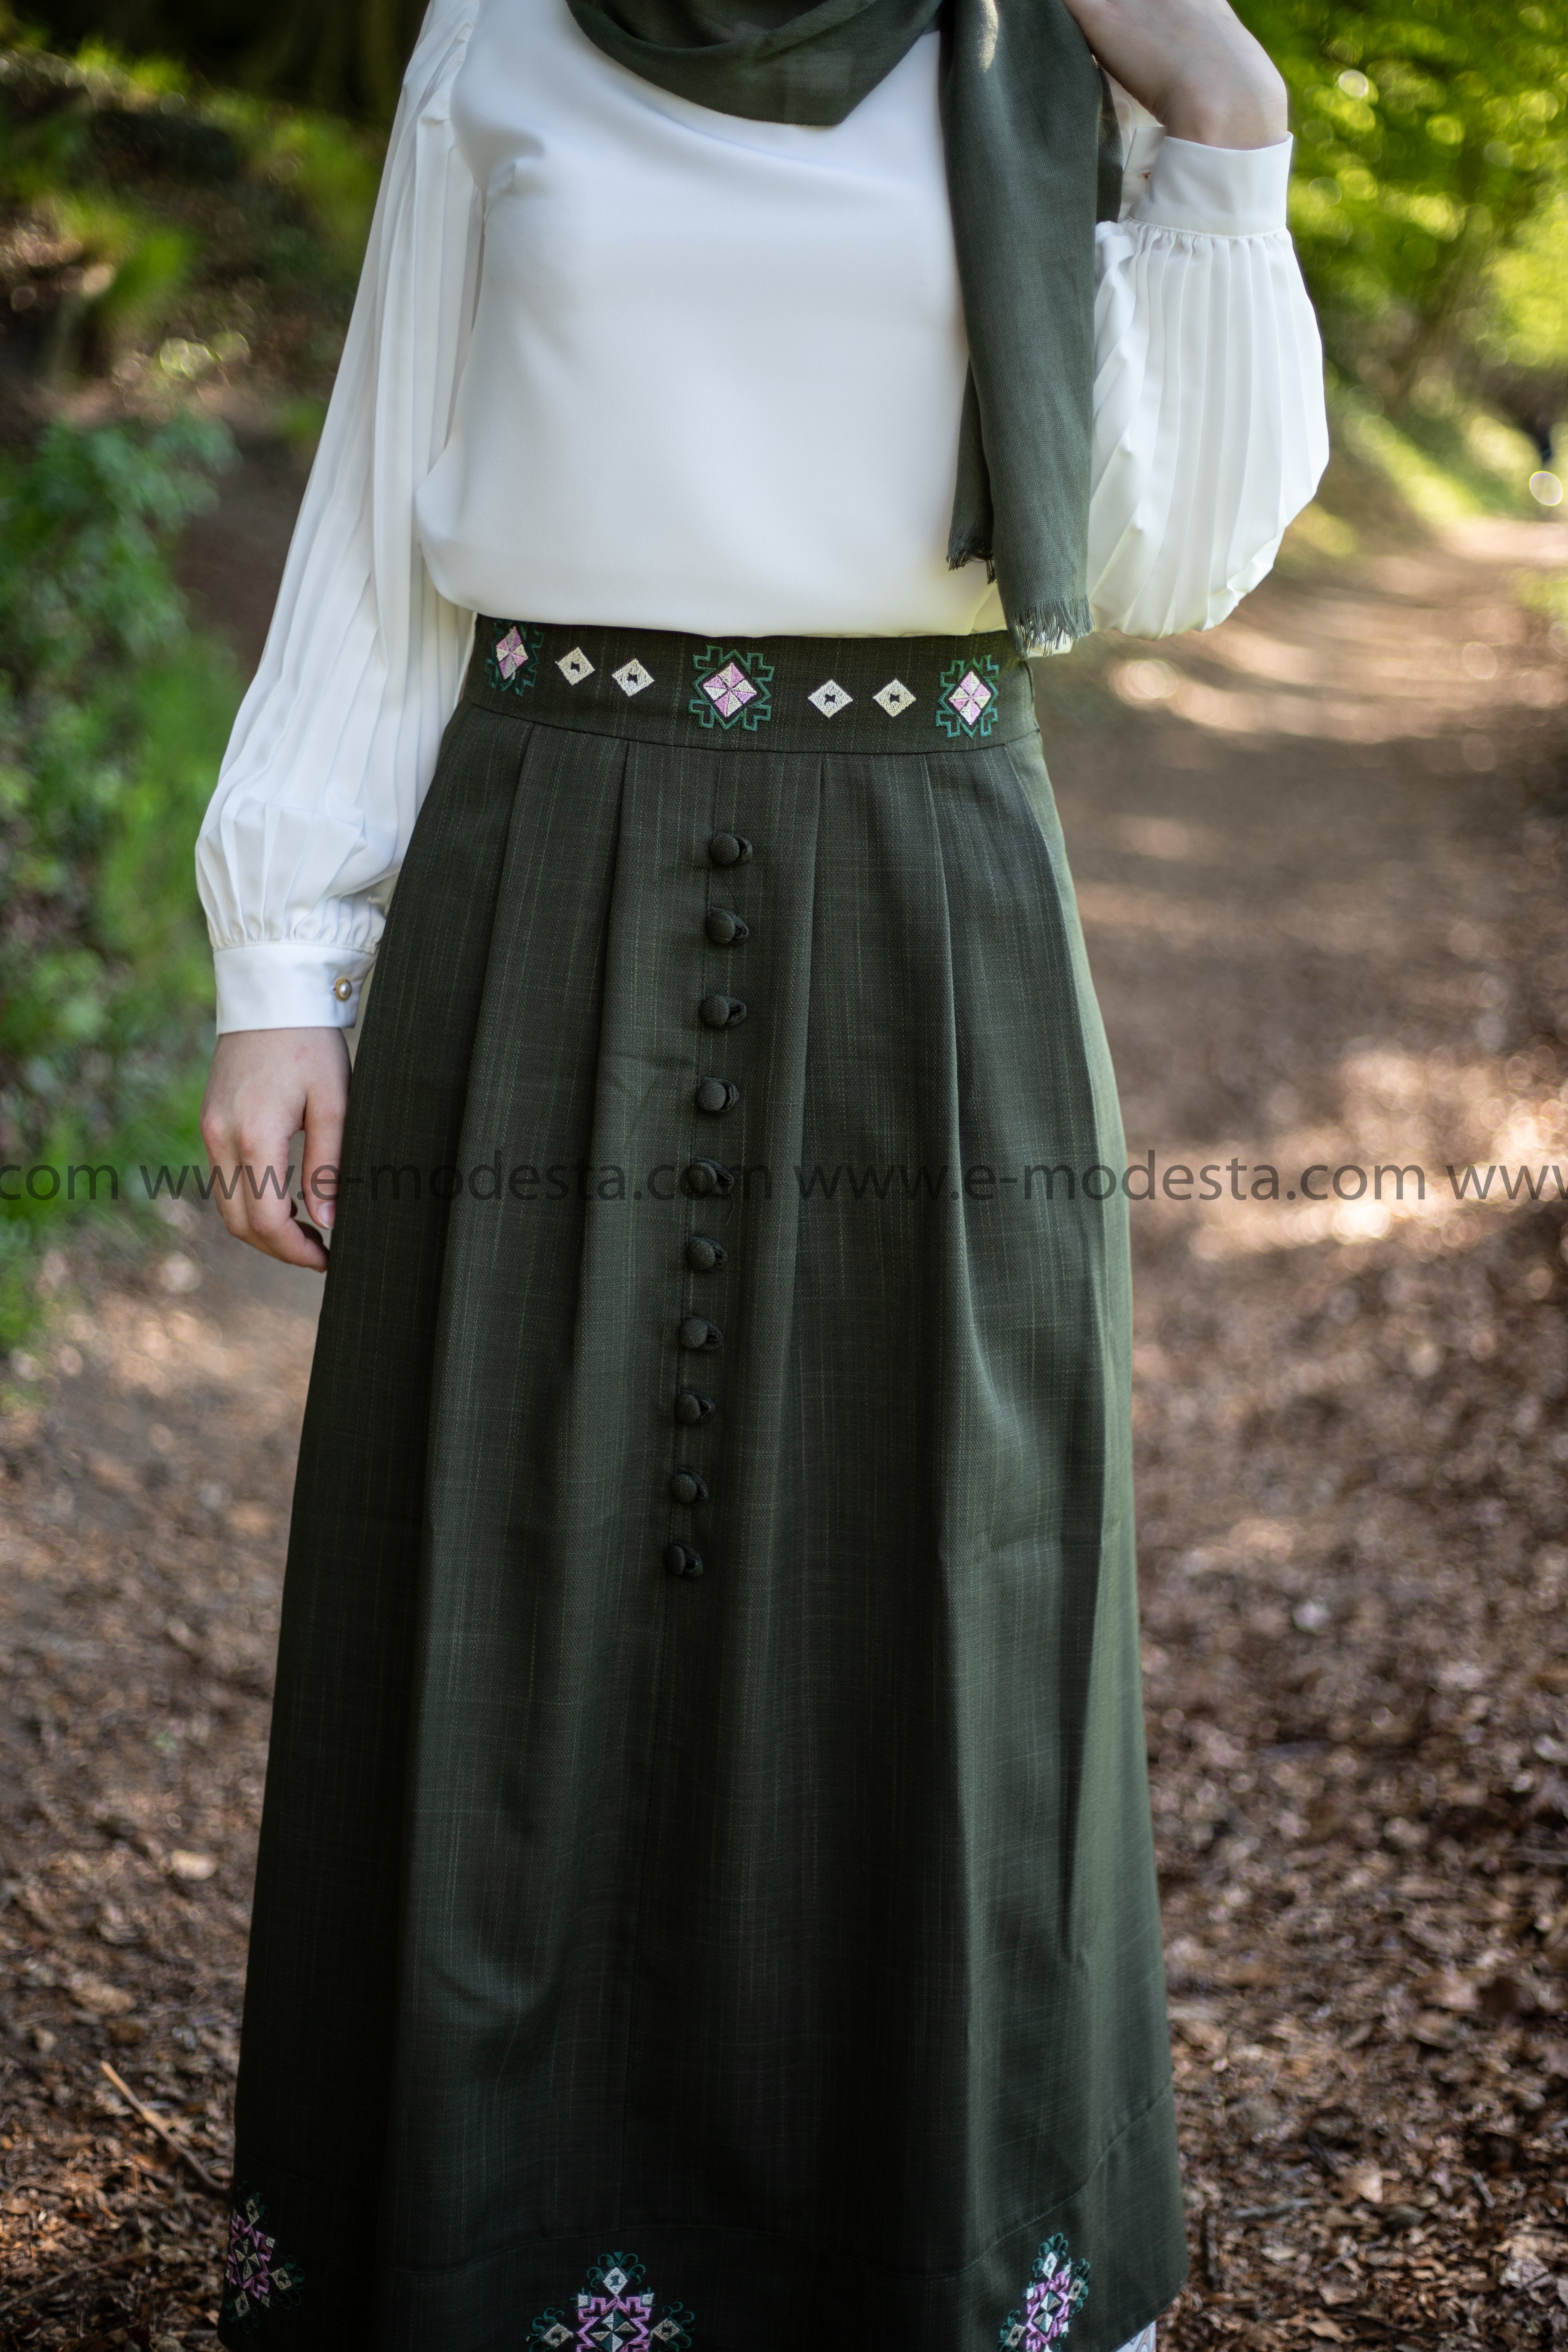 SALE Elegant Embroidery Skirt | Dark Green Color - E-Modesta